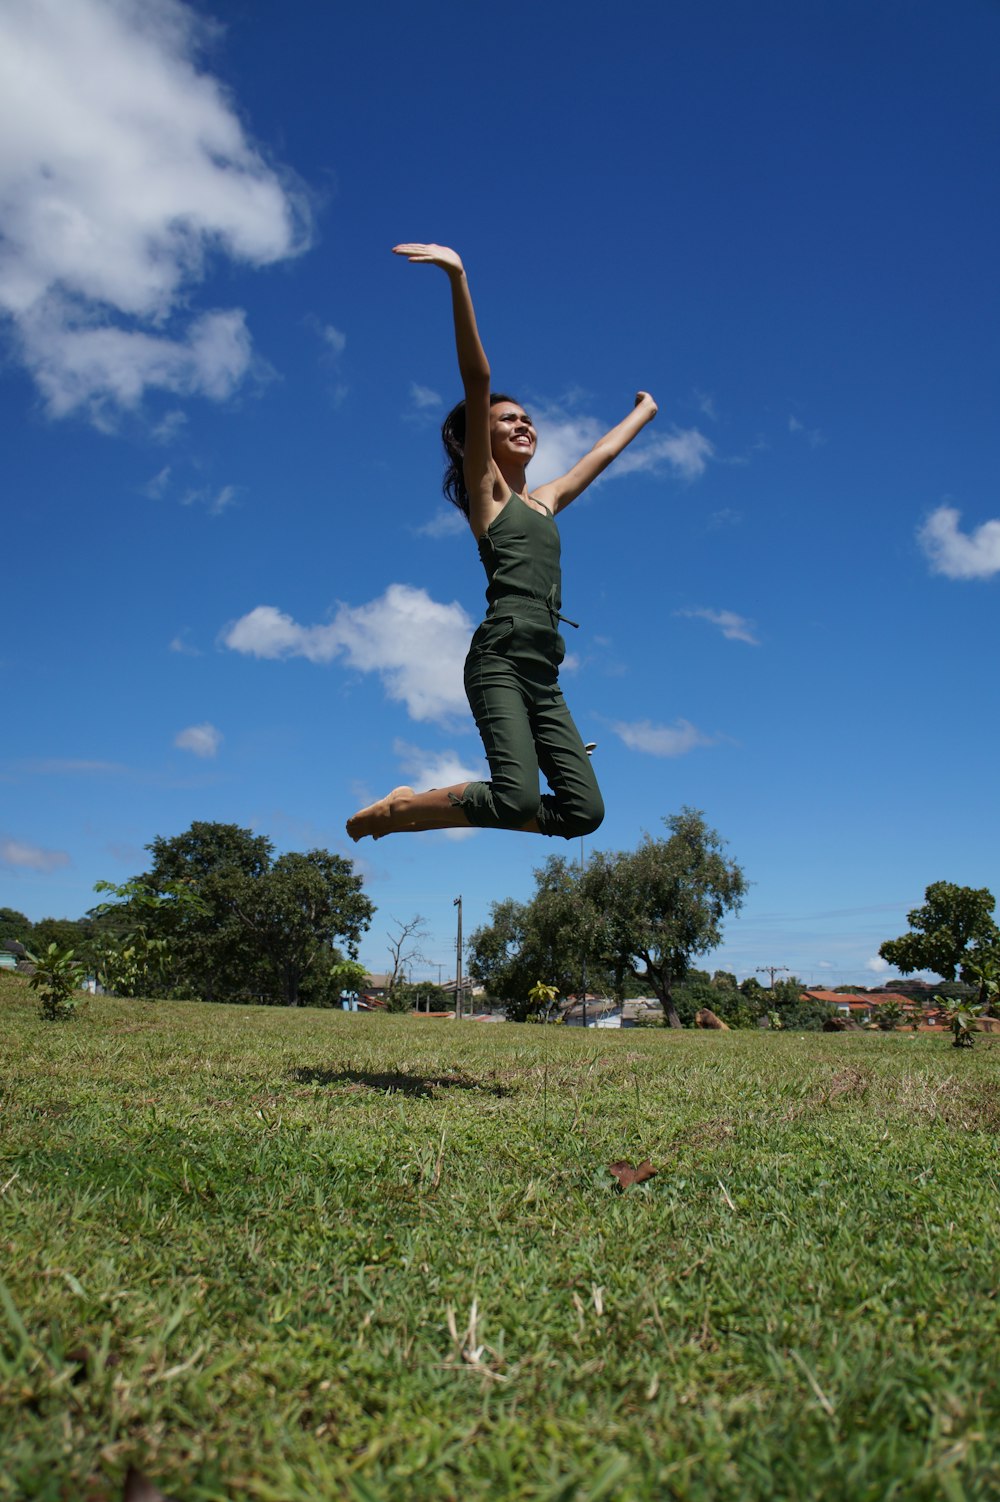 uma mulher pulando no ar com um frisbee